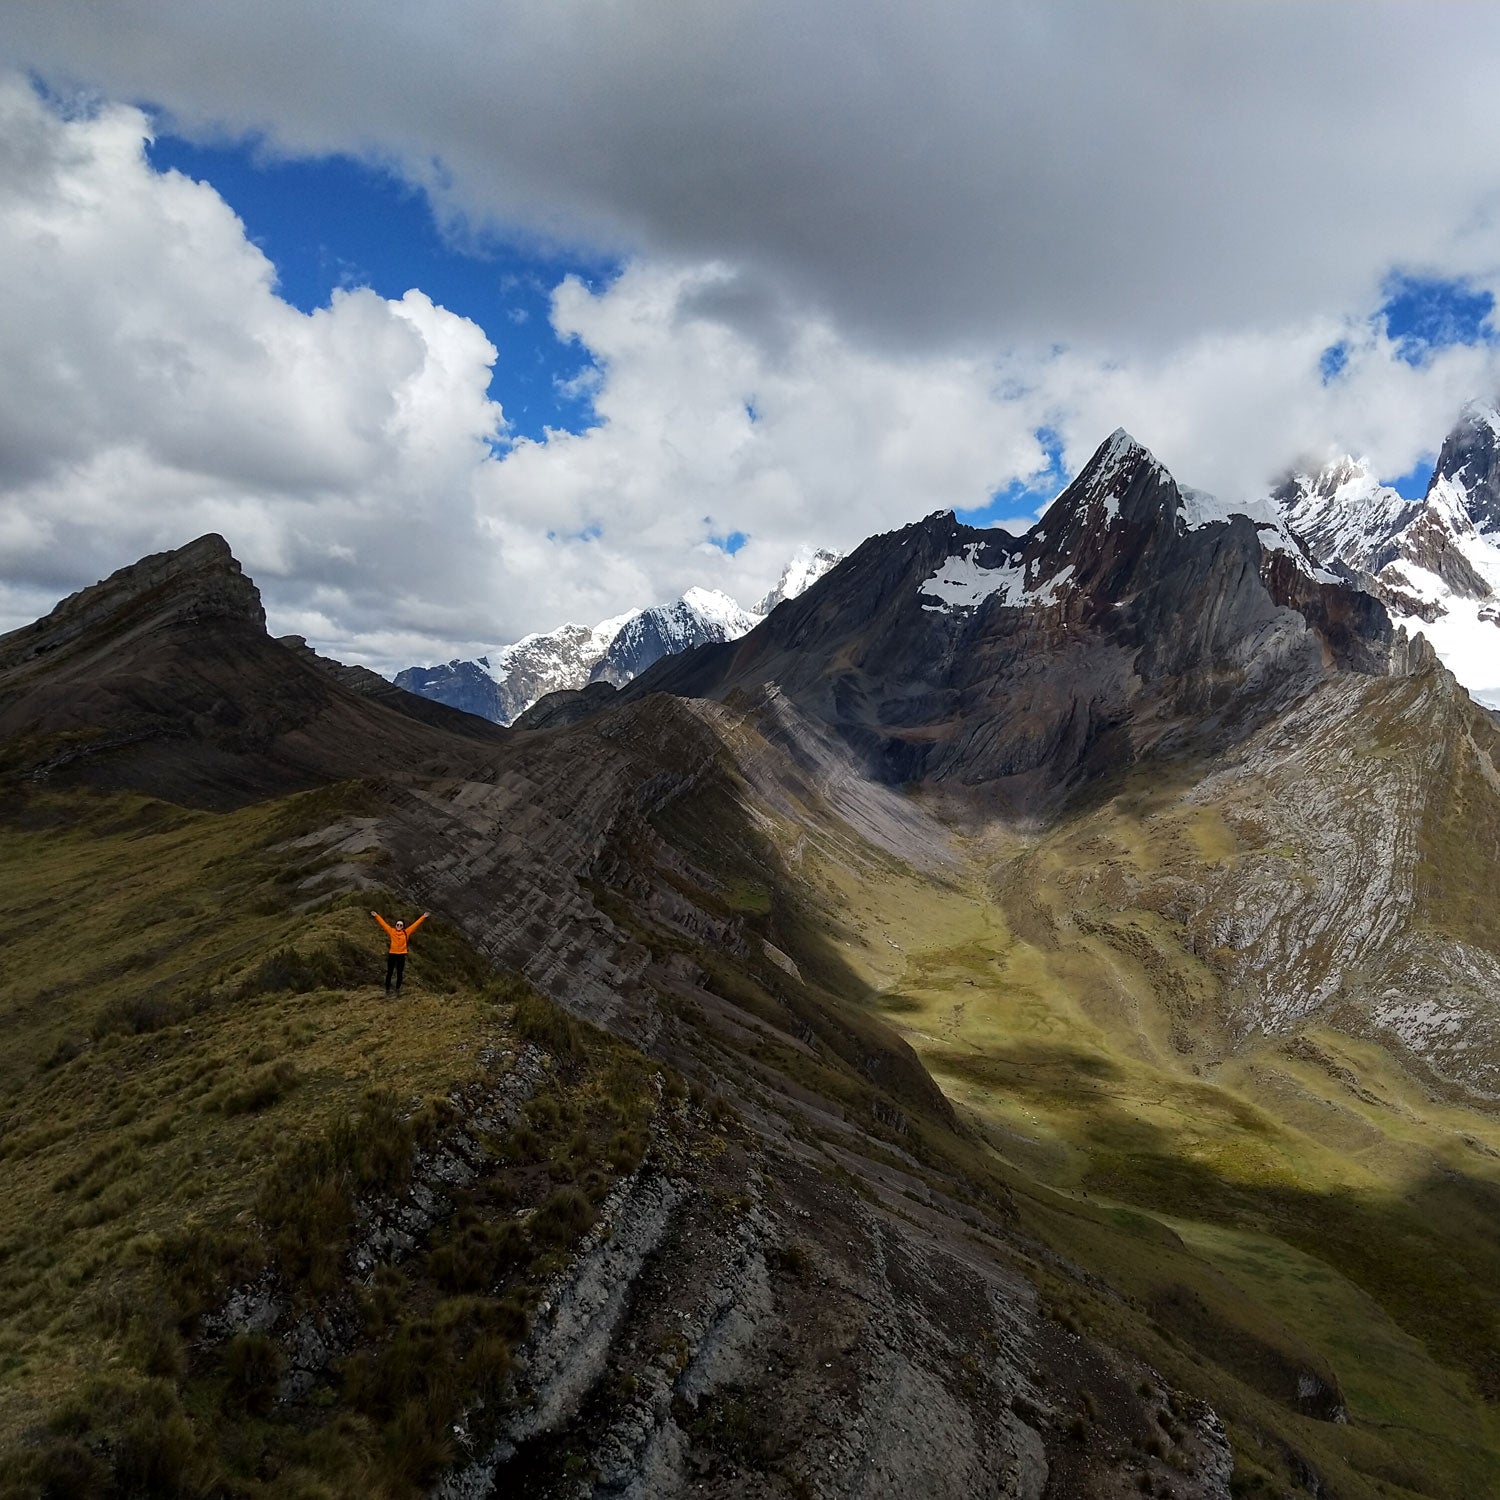 Hiking Peru’s Cordillera Huayhuash